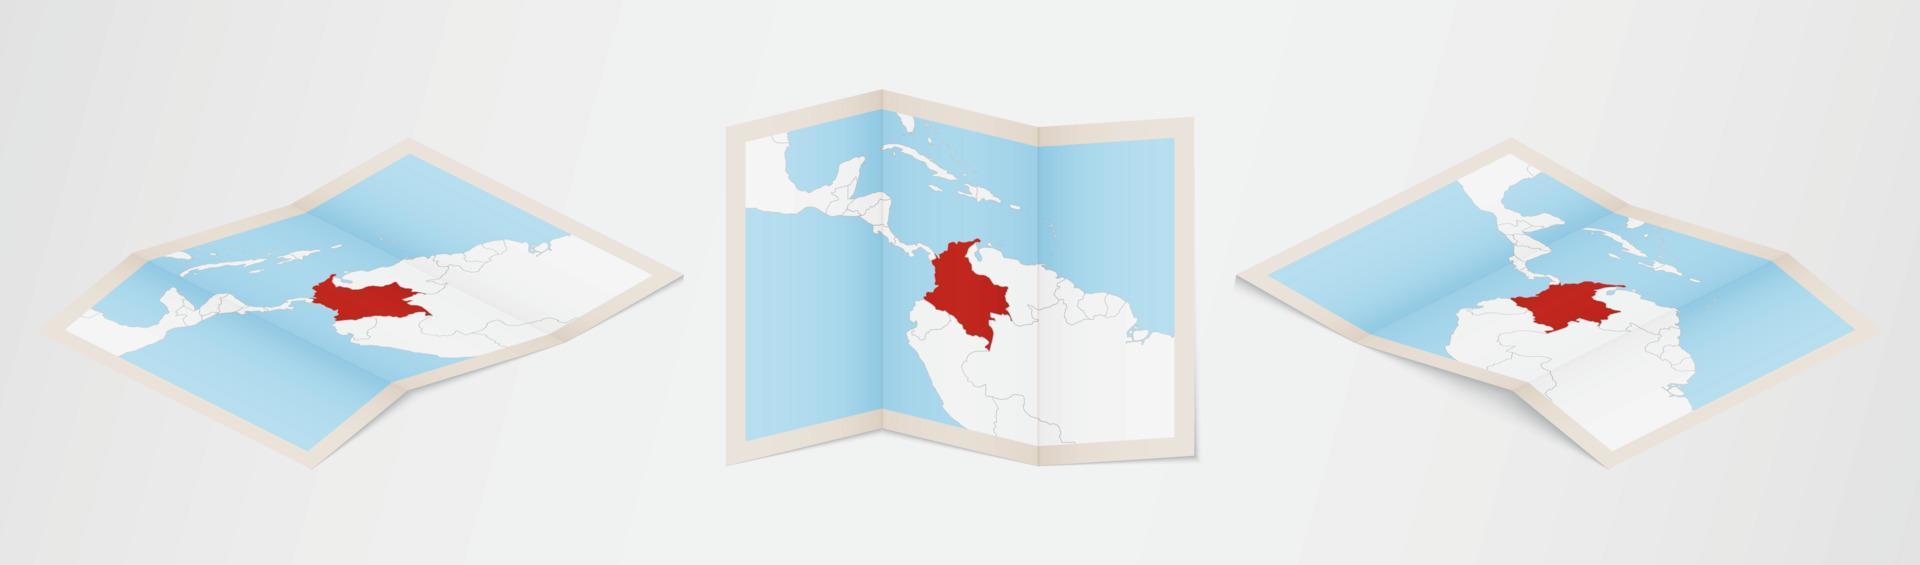 mapa dobrado da colômbia em três versões diferentes. vetor